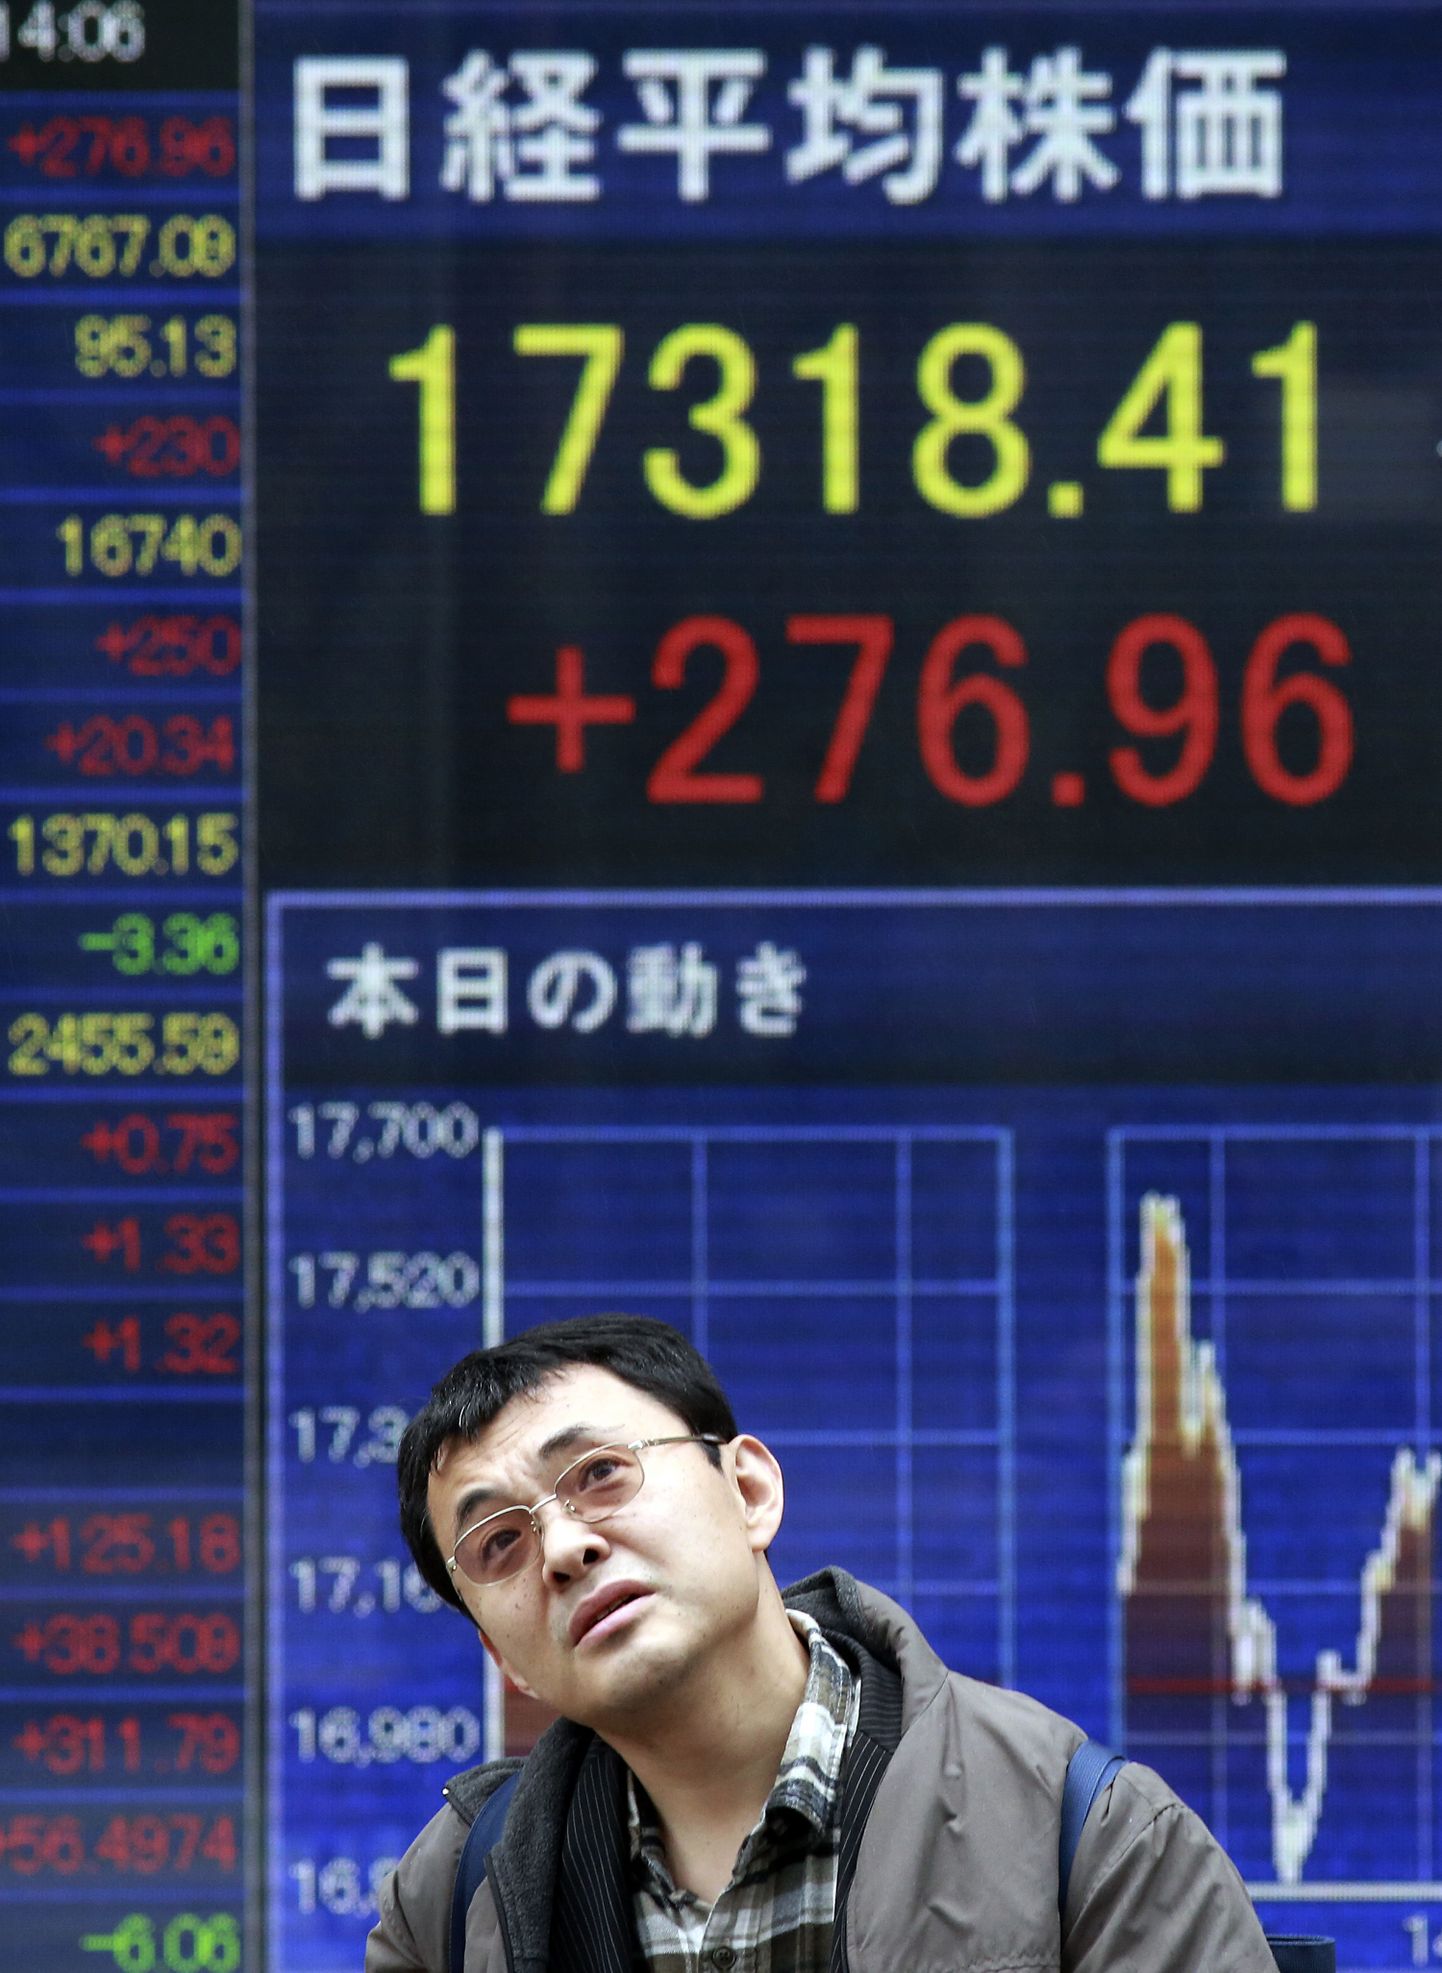 Mees Tokios Jaapani Nikkei 225 börsiindeksi kurssi kuvava tabloo ees.